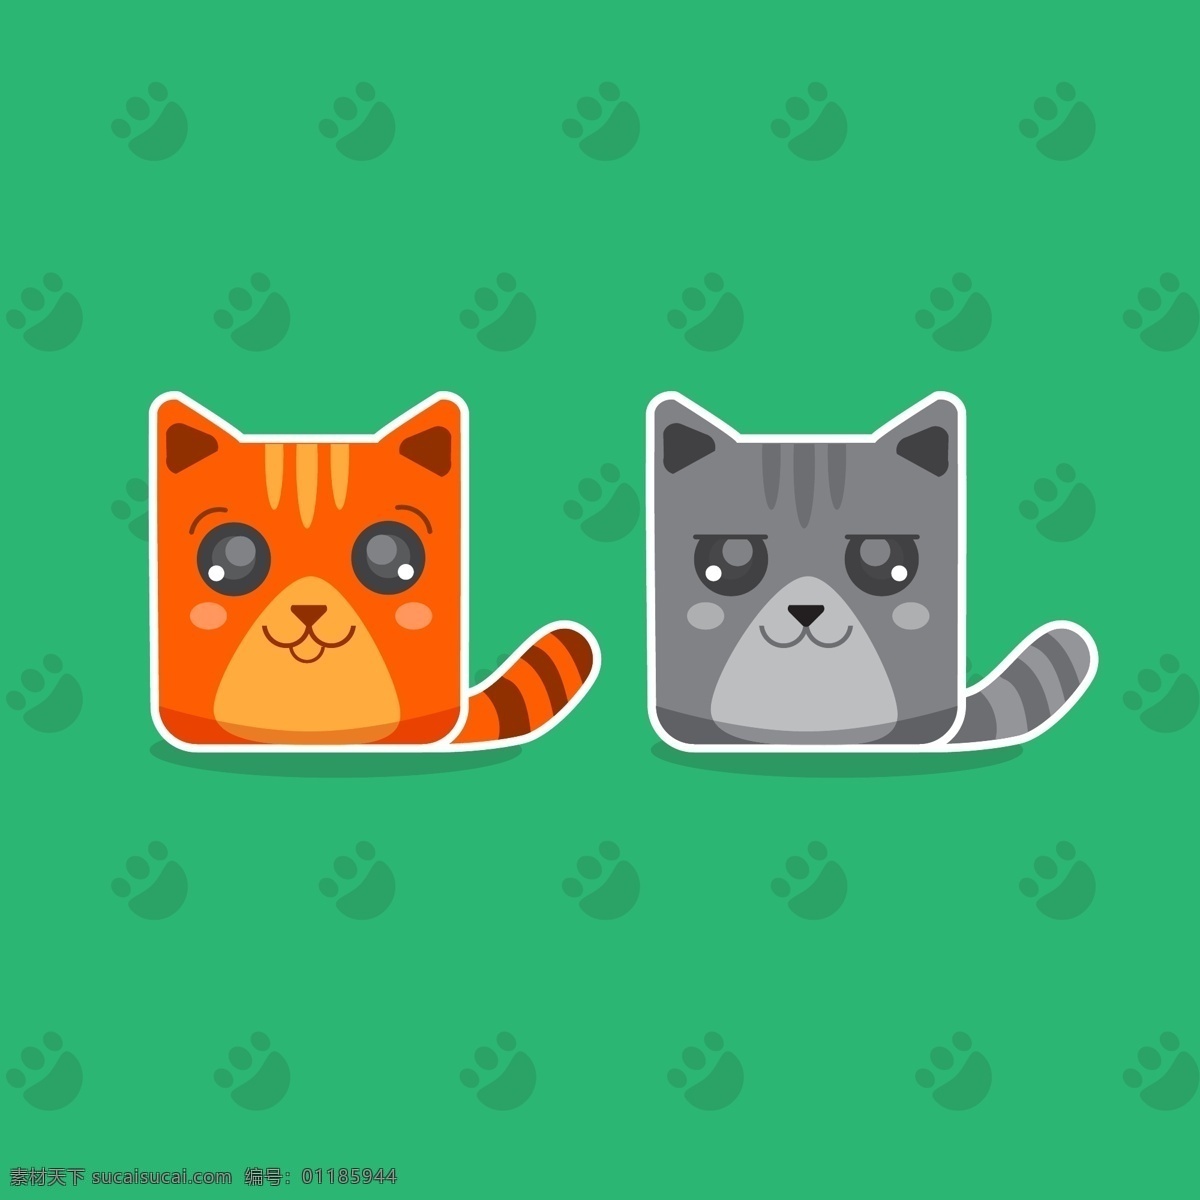 两 只 可爱 猫 贴纸 动物 卡通 印刷 足迹 动物印刷 包装 可爱的动物 卡通动物 青色 天蓝色